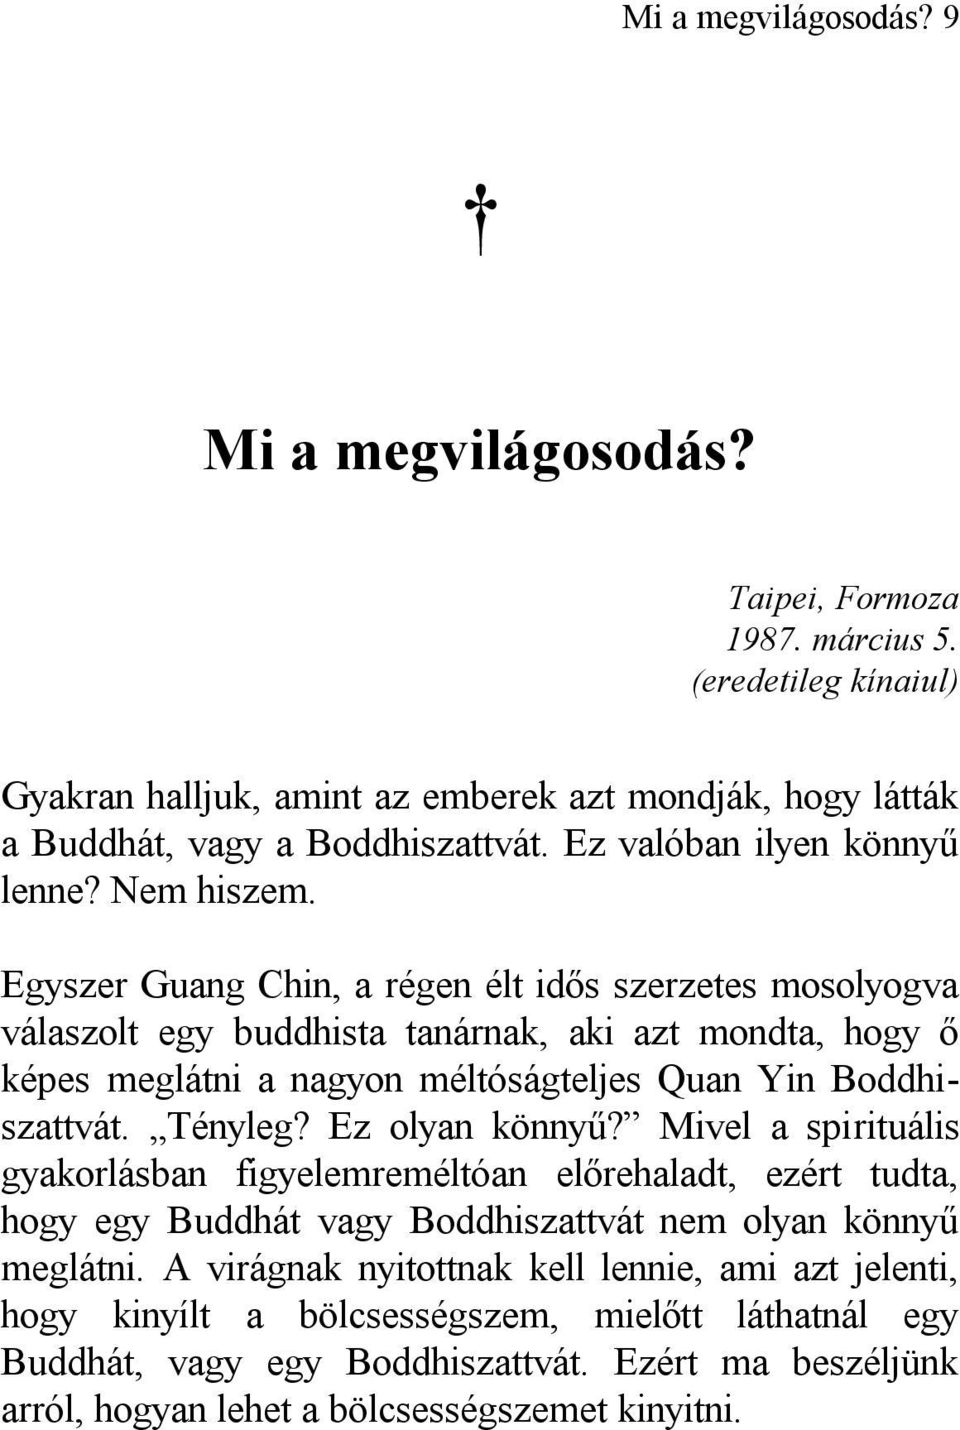 Egyszer Guang Chin, a régen élt idős szerzetes mosolyogva válaszolt egy buddhista tanárnak, aki azt mondta, hogy ő képes meglátni a nagyon méltóságteljes Quan Yin Boddhiszattvát. Tényleg?